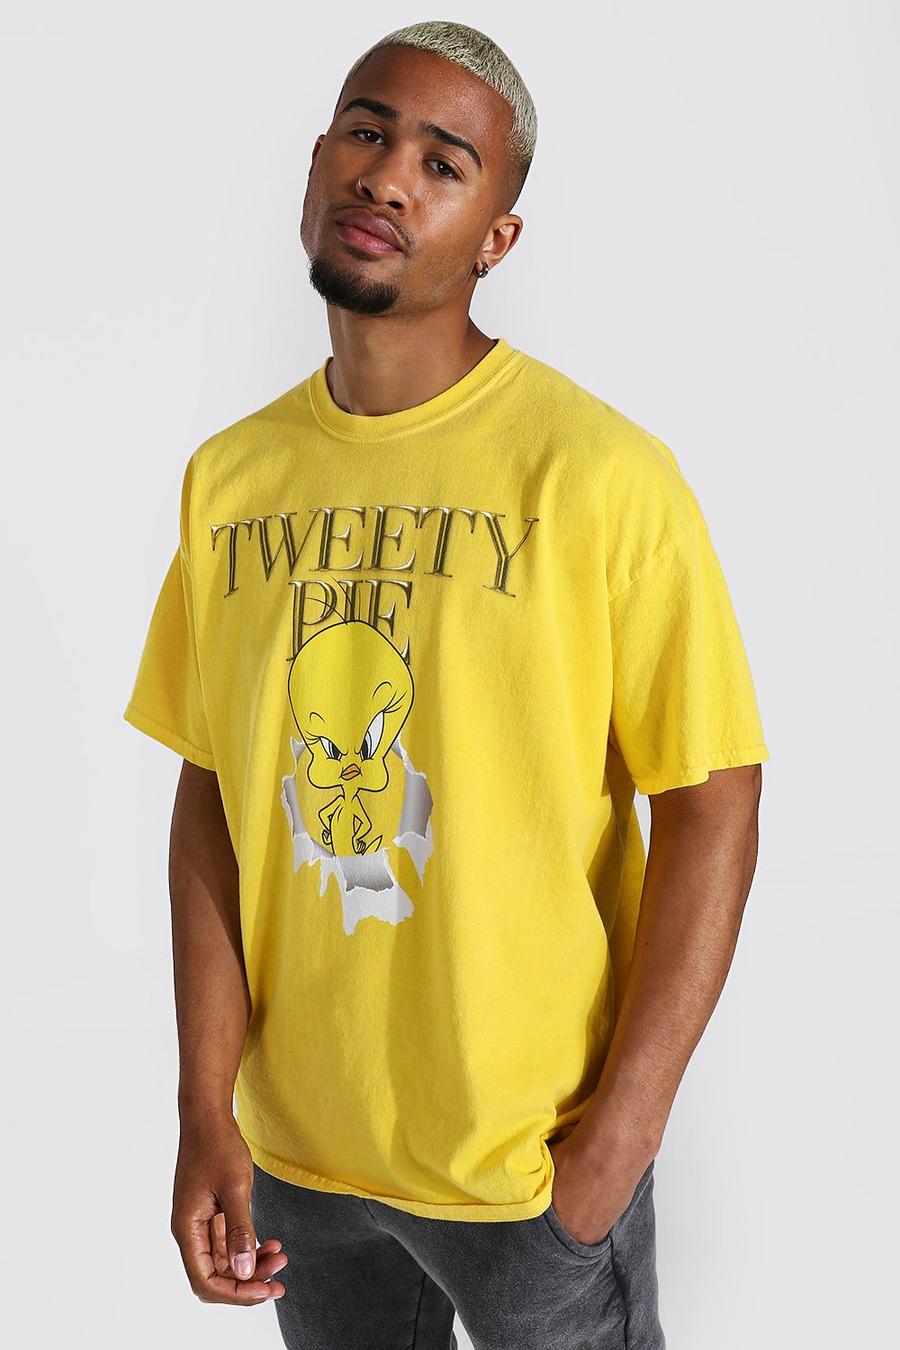 צהוב amarillo טישרט אוברסייז בצביעה כפולה ממותג עם הדפס Tweety Pie